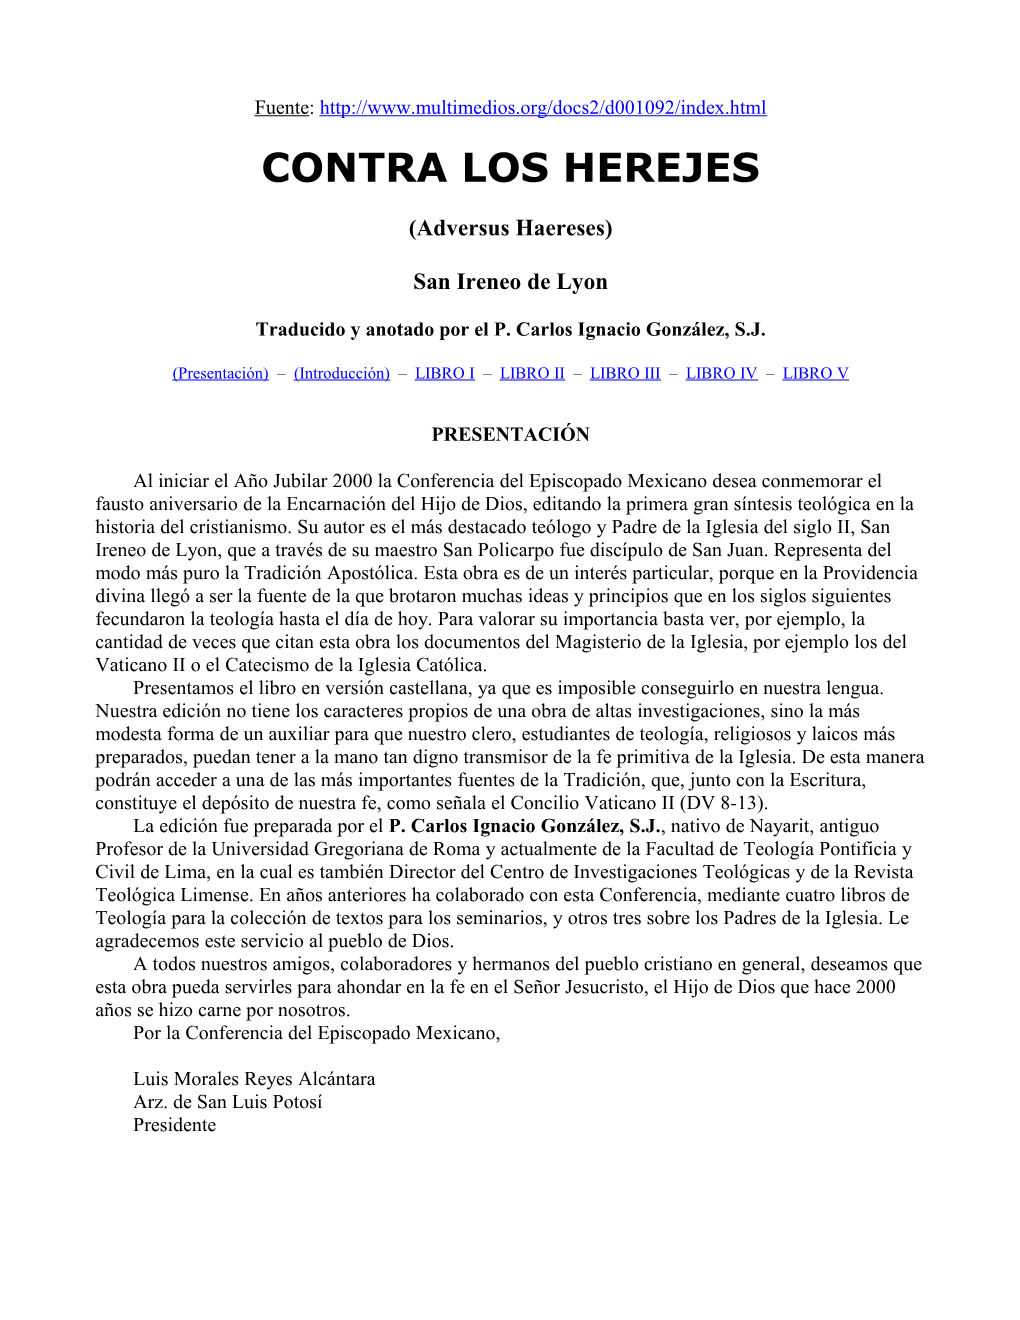 Contra Los Herejes, Ireneo De Lyon